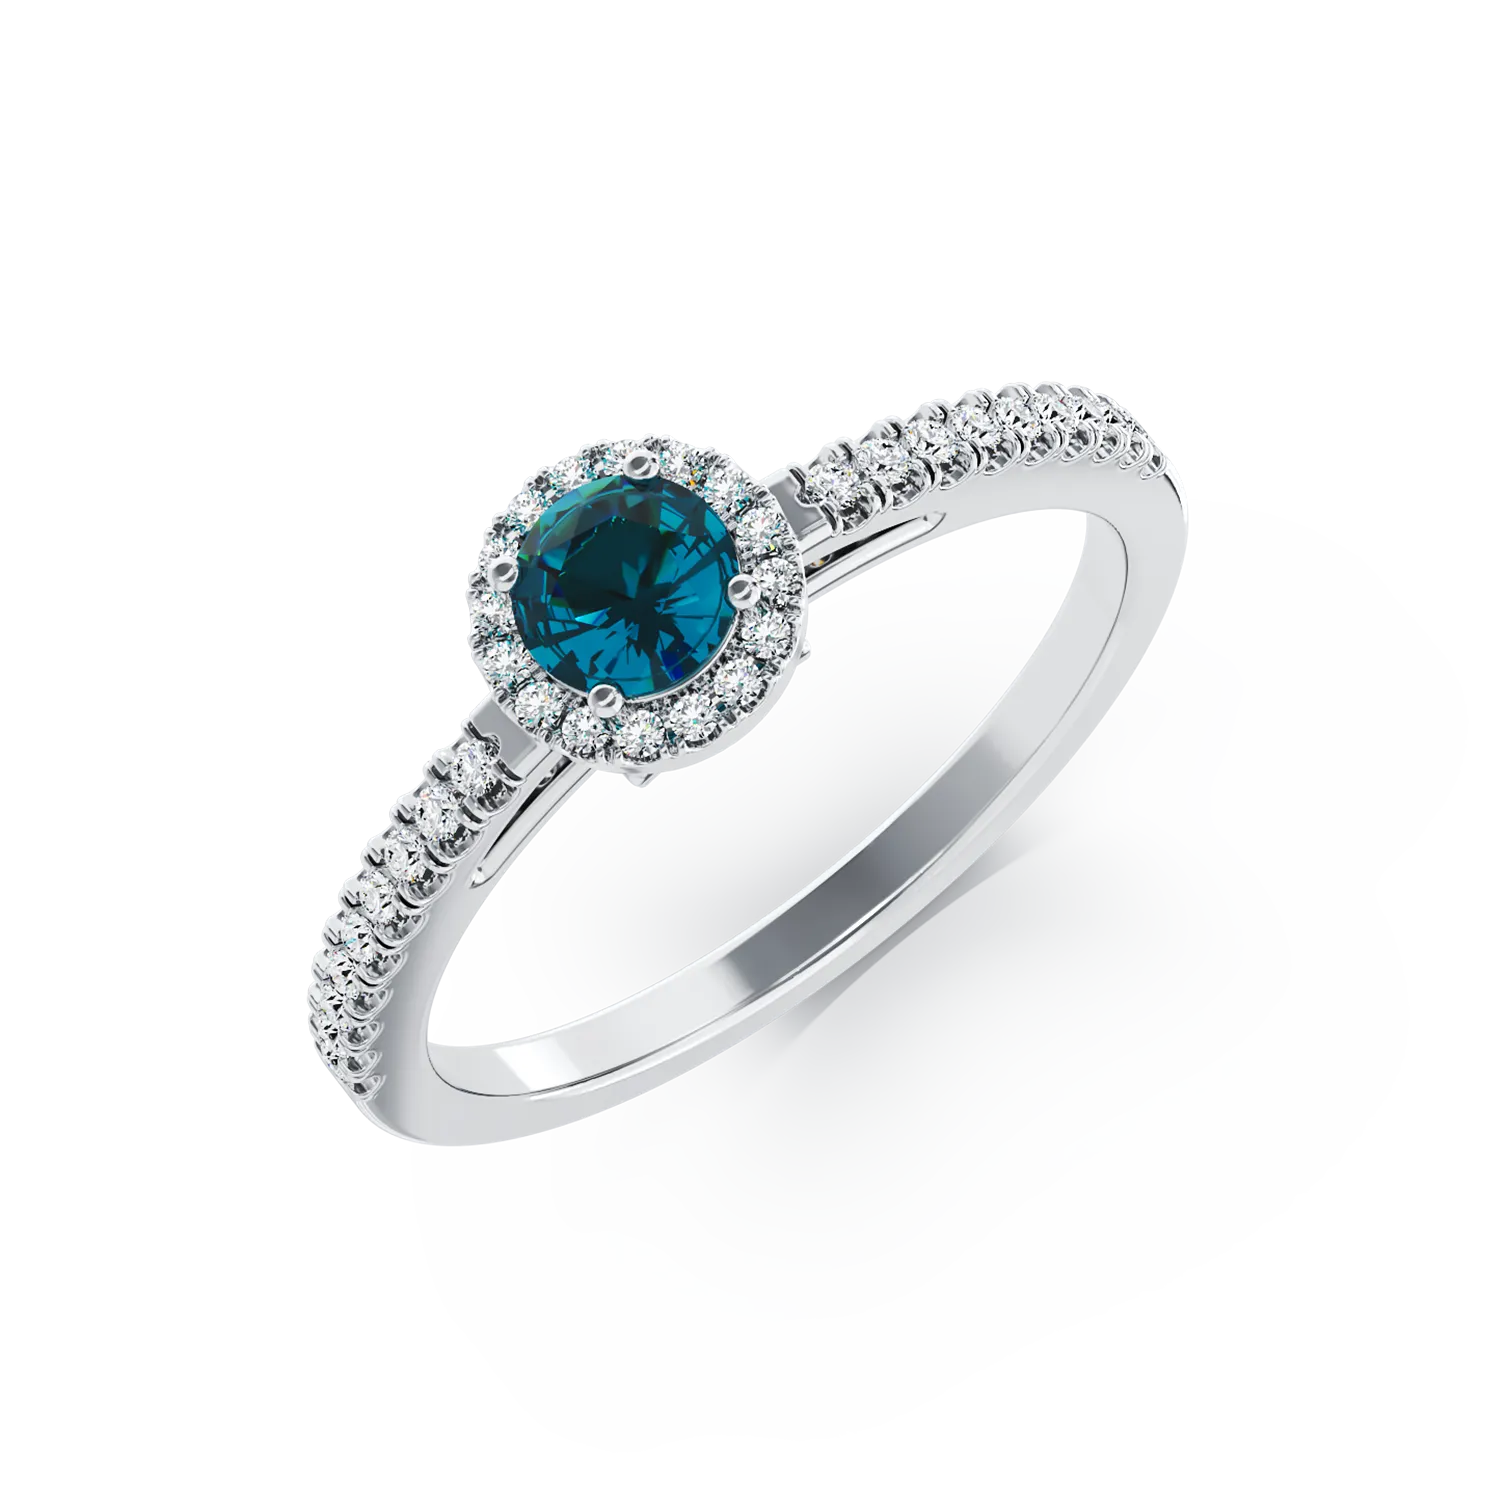 Inel de logodna din aur alb de 18K cu diamant albastru de 0.3ct si diamante transparente de 0.2ct